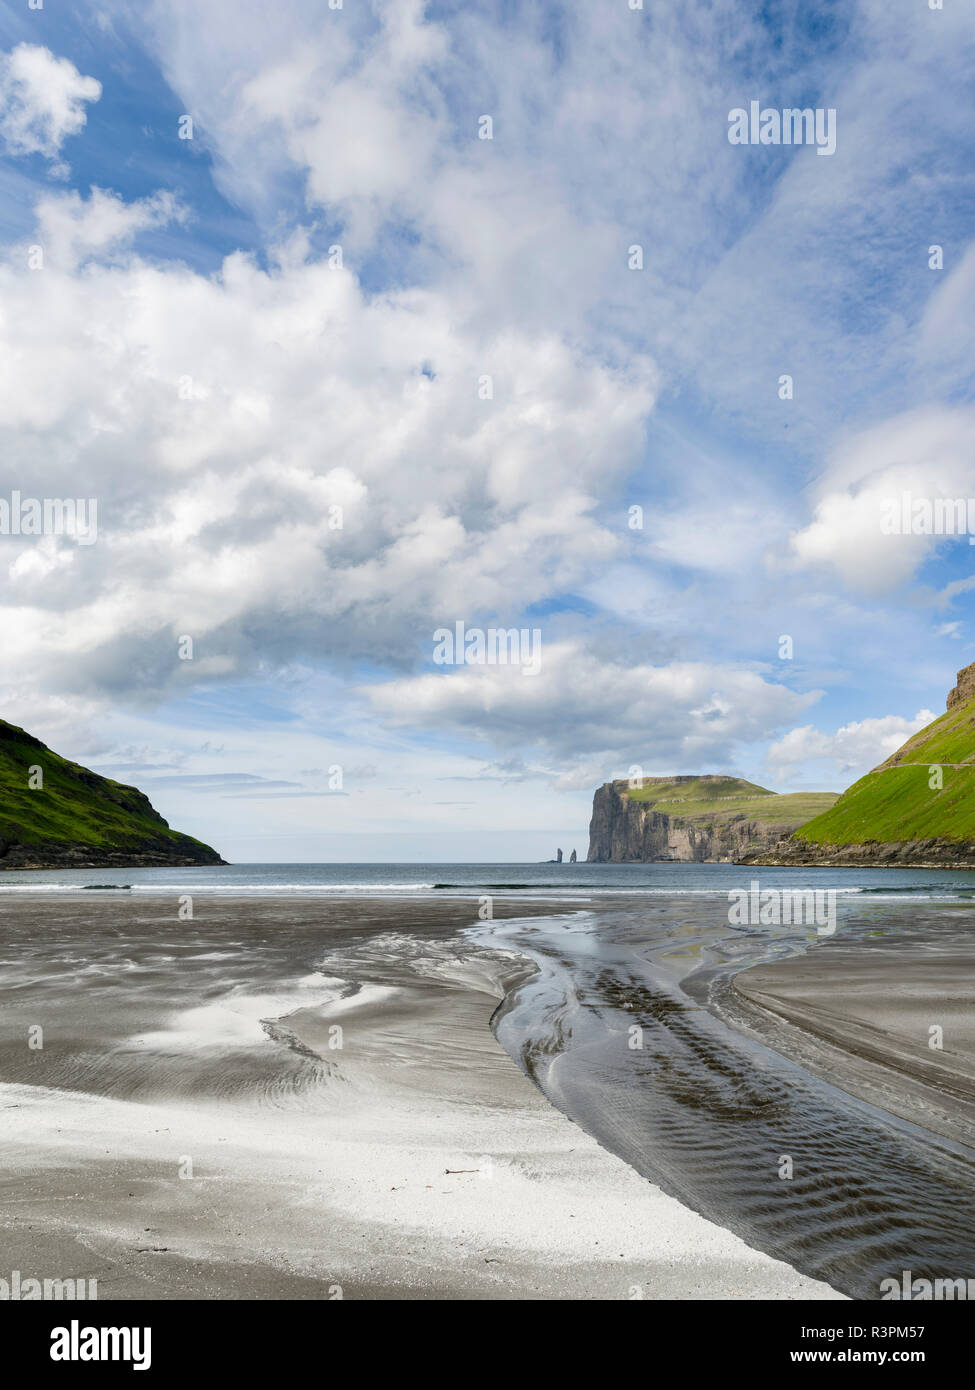 Strand bei Tjornuvik. Im Hintergrund die Insel Eysturoy mit der legendären Sea stacks Risin und Kellingin. Dänemark, Färöer Inseln Stockfoto